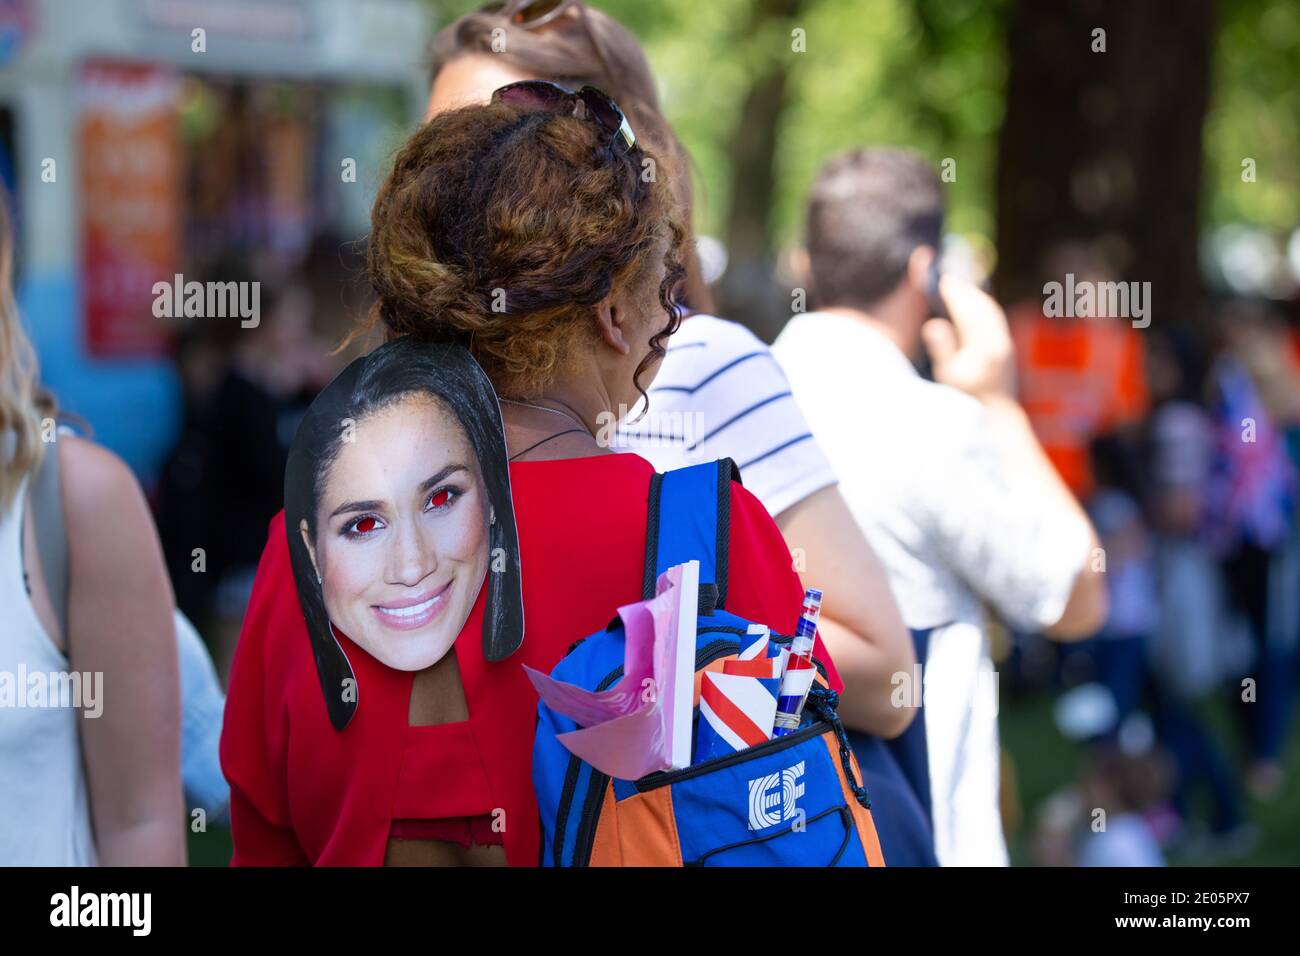 Frau trägt eine Meghan Markle Maske, während sie die Hochzeit von Prinz  Harry und Meghan Markle, die am 19. Mai 2018 in Windsor Castle,  Großbritannien, stattfand, beobachtet Stockfotografie - Alamy